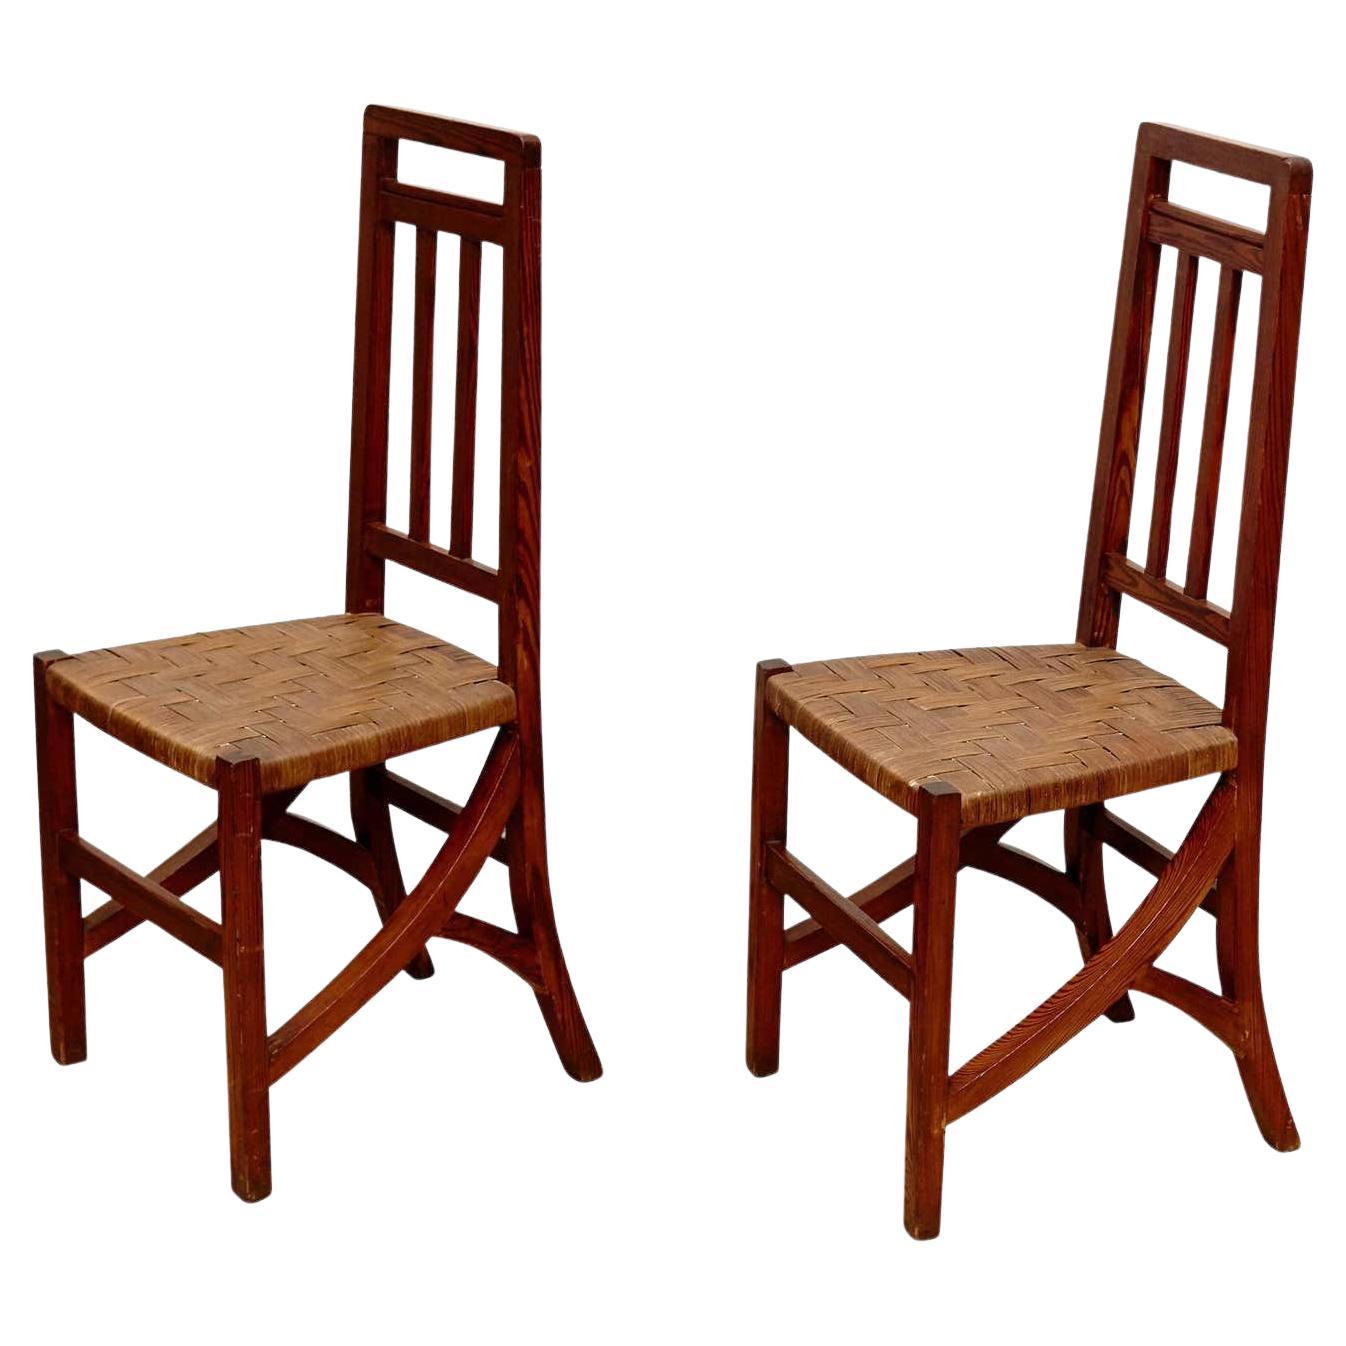 Satz von zwei Arts and Crafts-Stühlen aus Holz und Rattan, um 1910